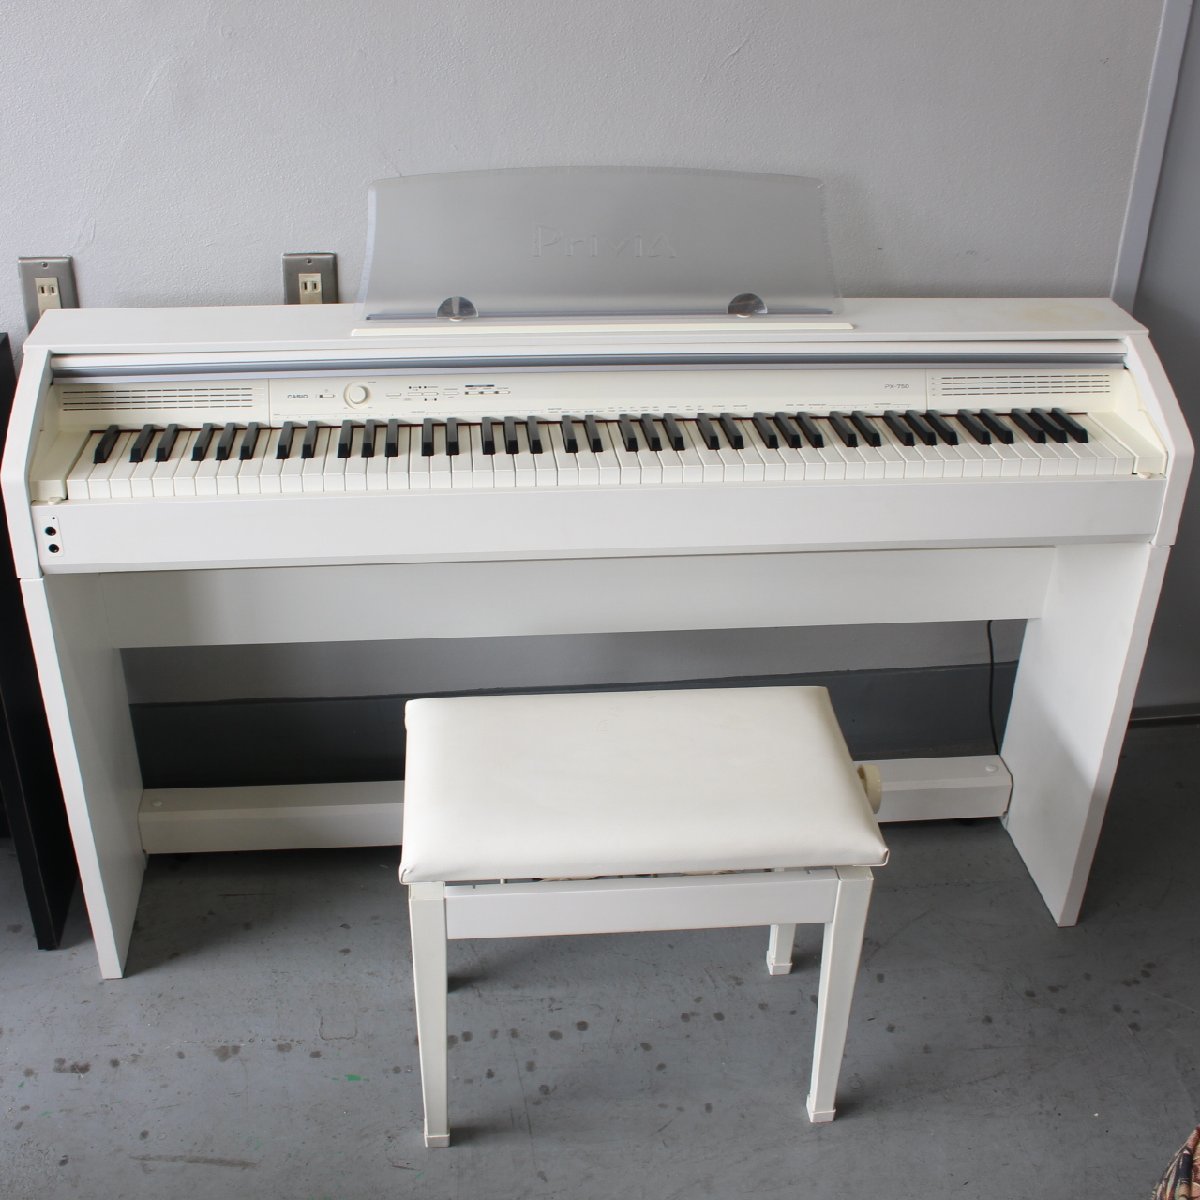 横浜市緑区にて カシオ 電子ピアノ Privia PX-750WE 2012年製 を出張買取させて頂きました。